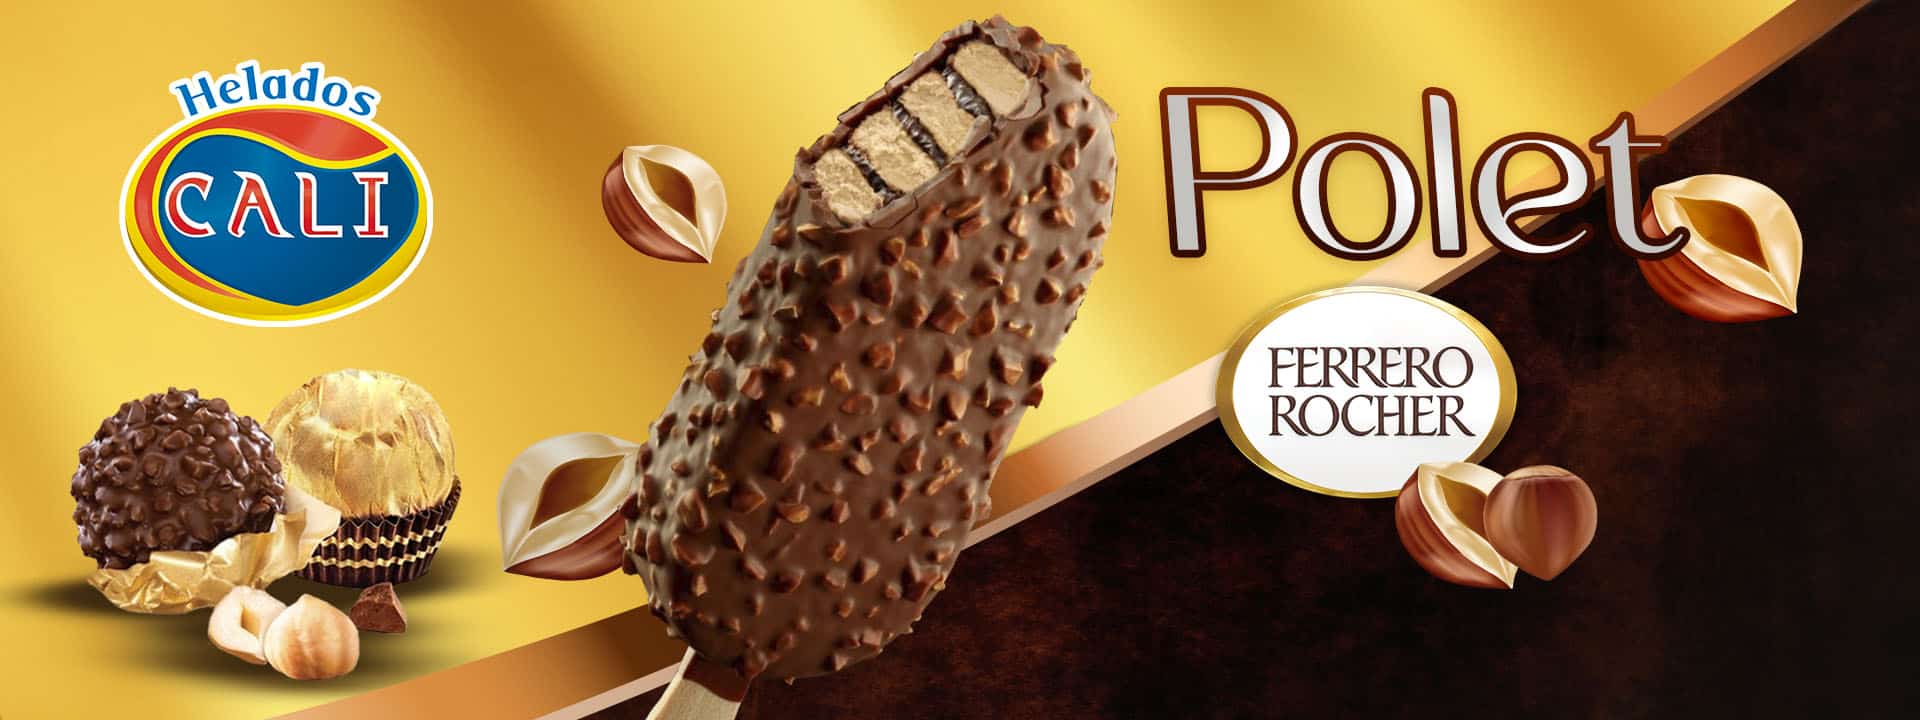 Helado Polet Ferrero